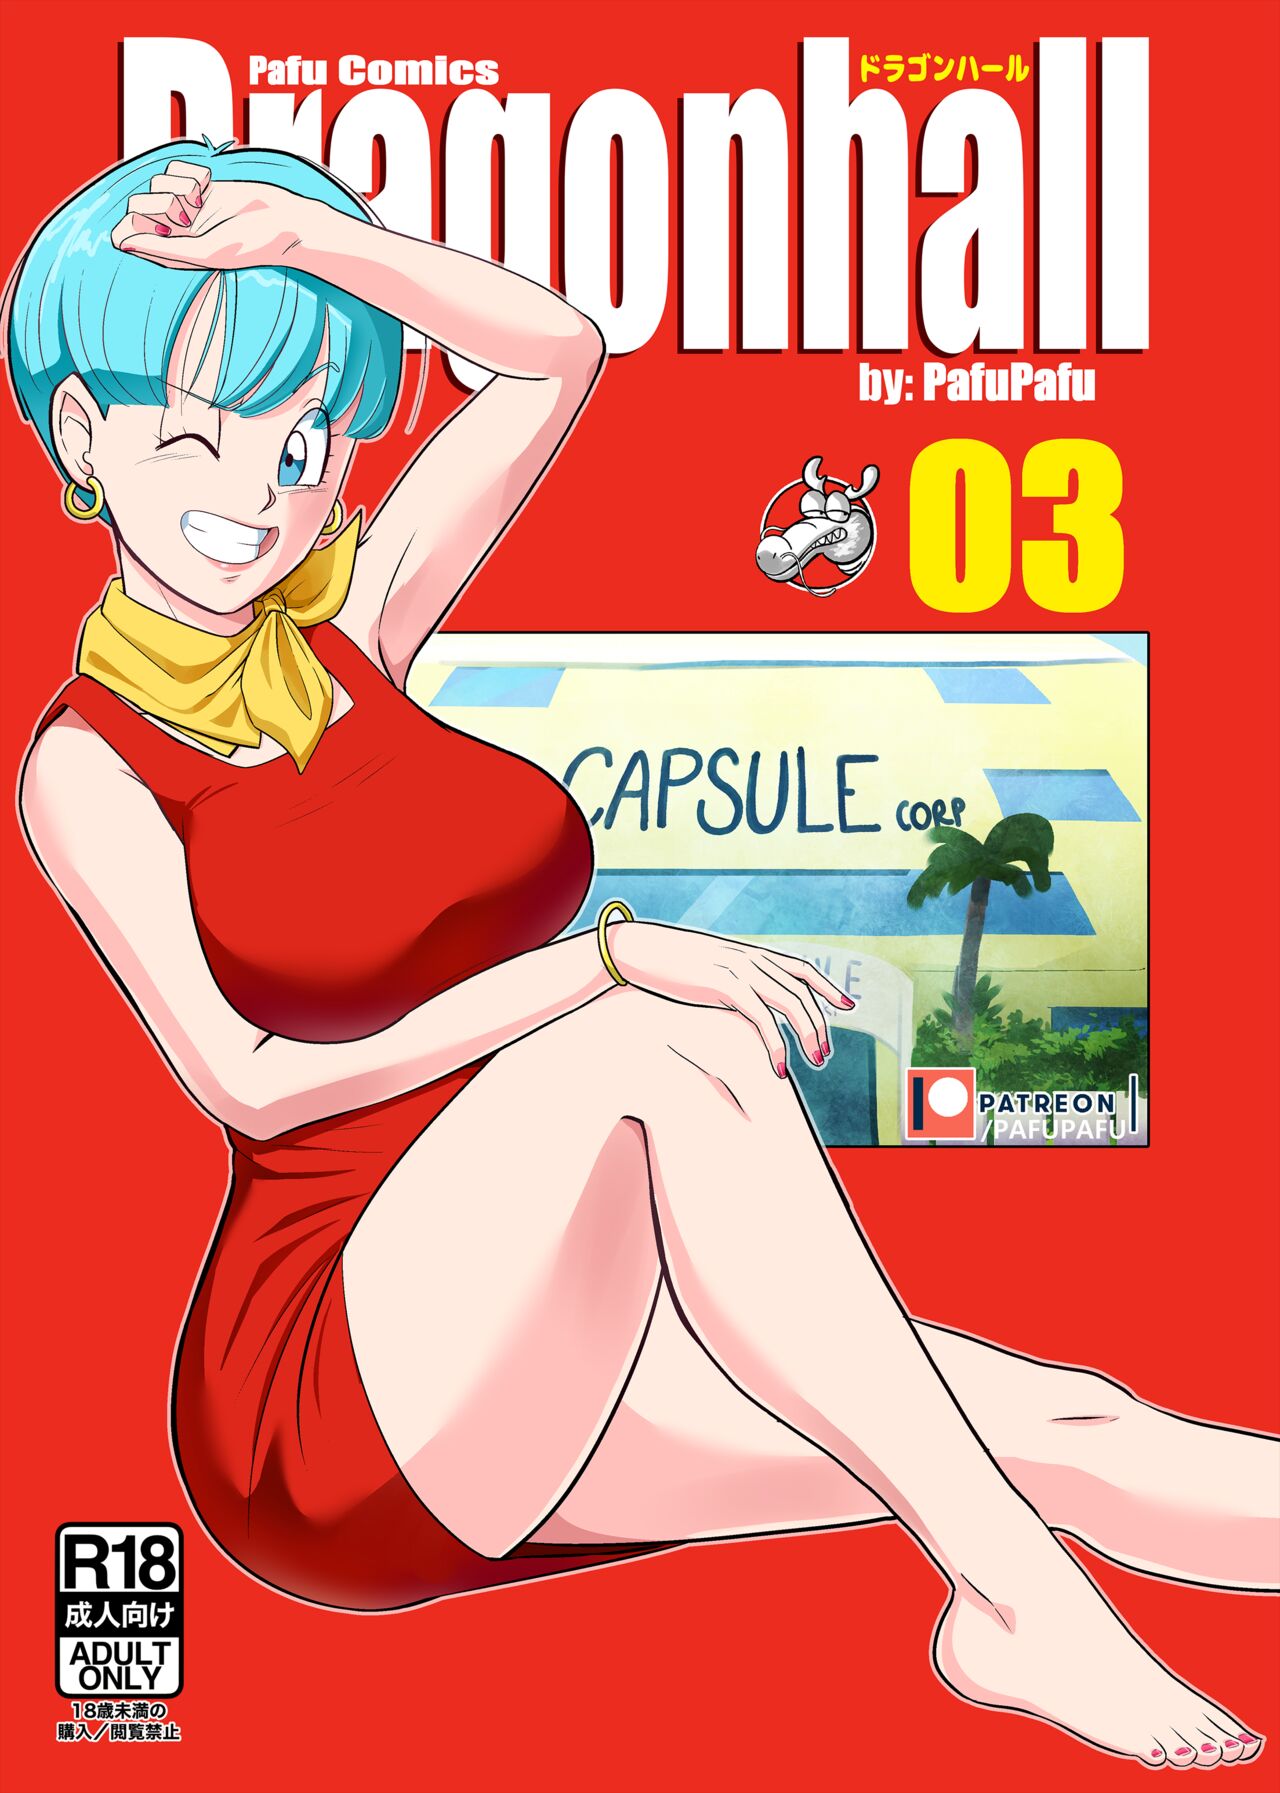 Adult Sex Dragon Ball - Dragon Ball 3 - Gohan vs Bulma! comic porn | HD Porn Comics